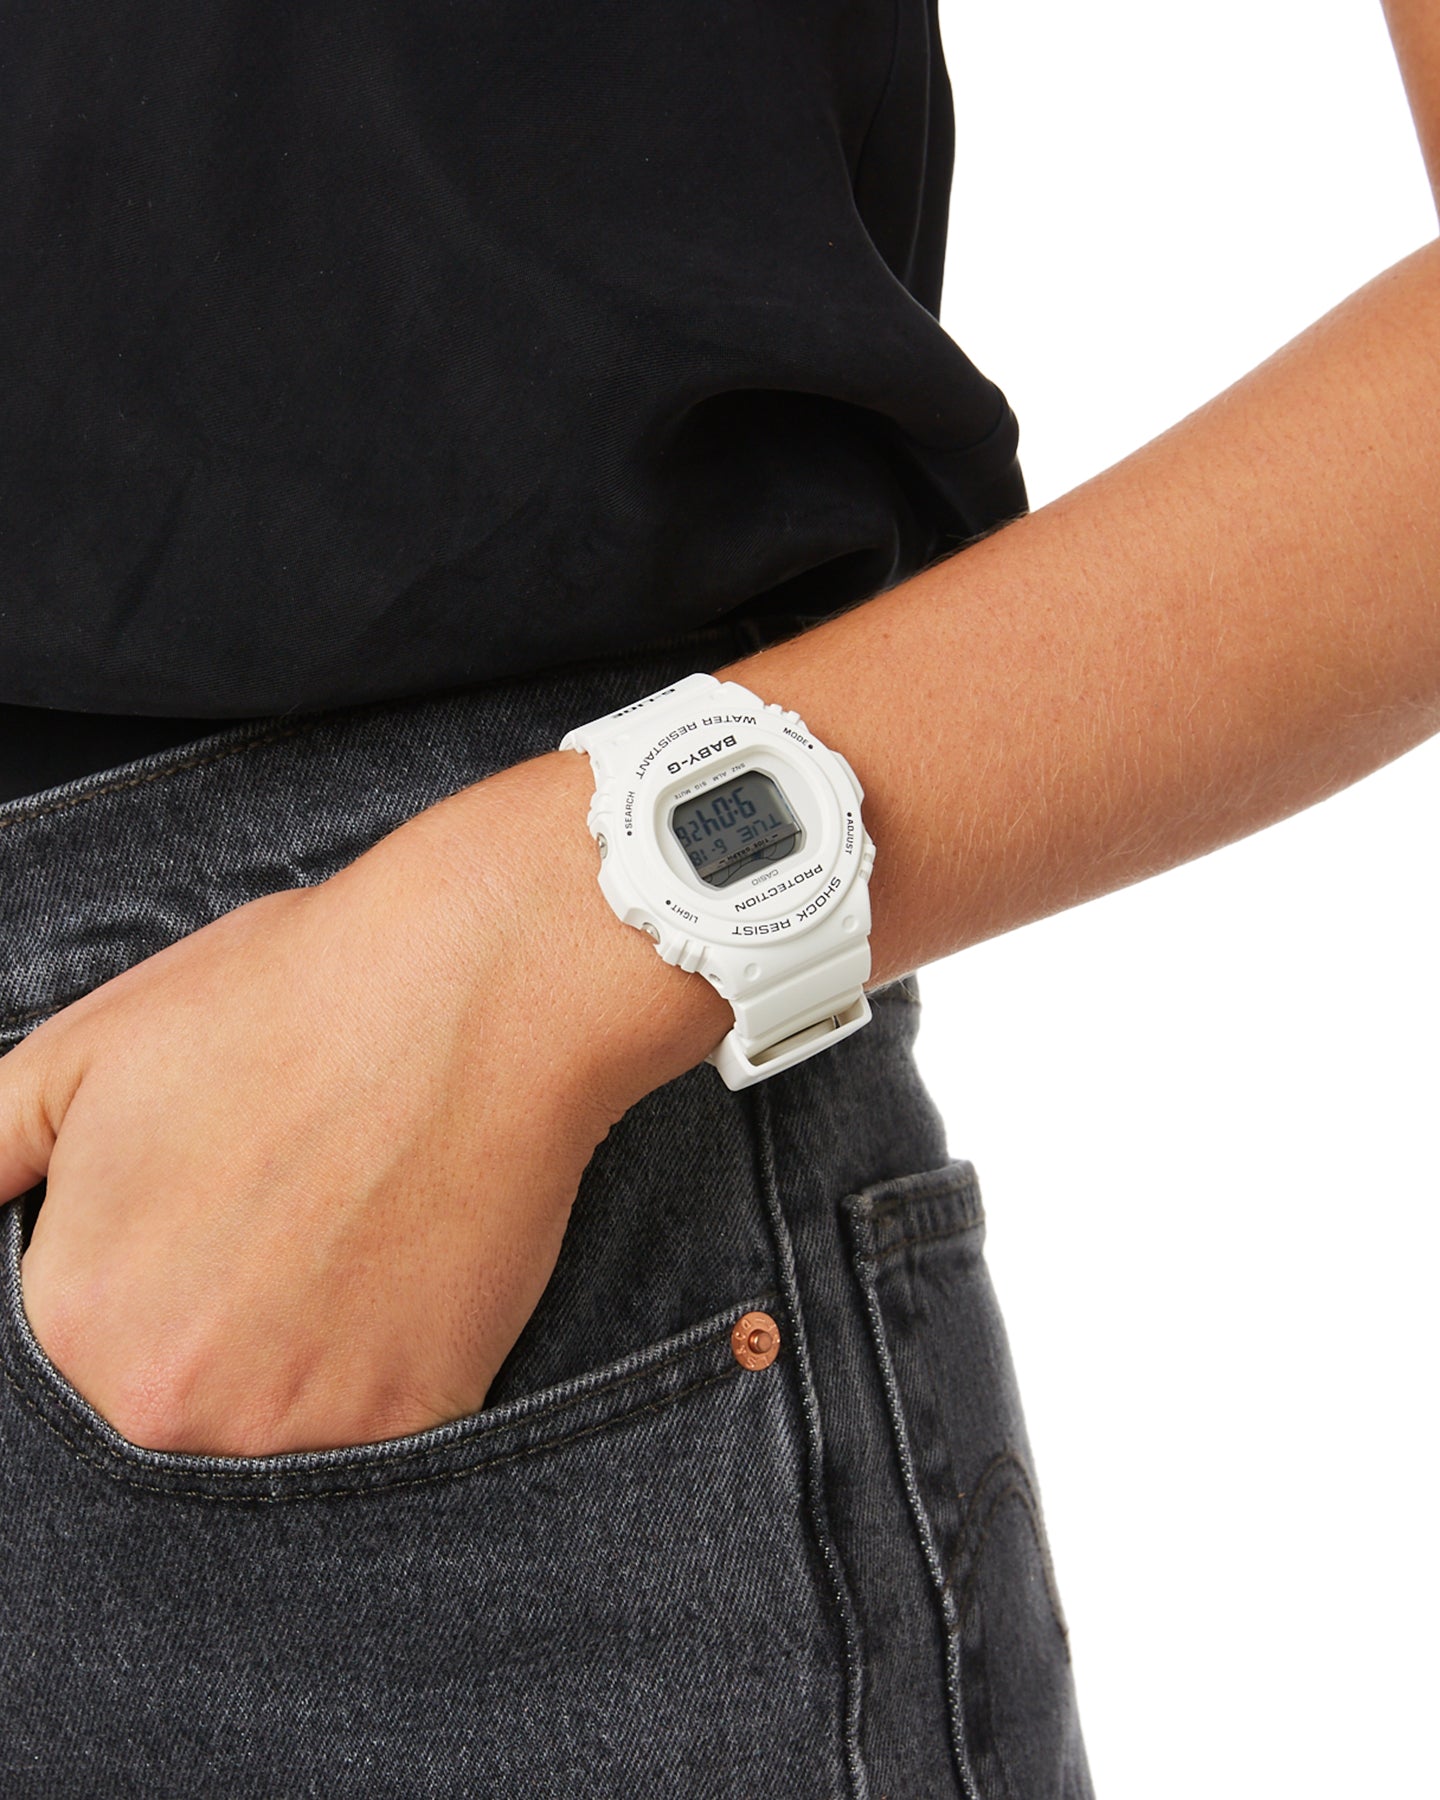 人気セール BABY-Gの腕時計 BLX-570-7JF 腕時計